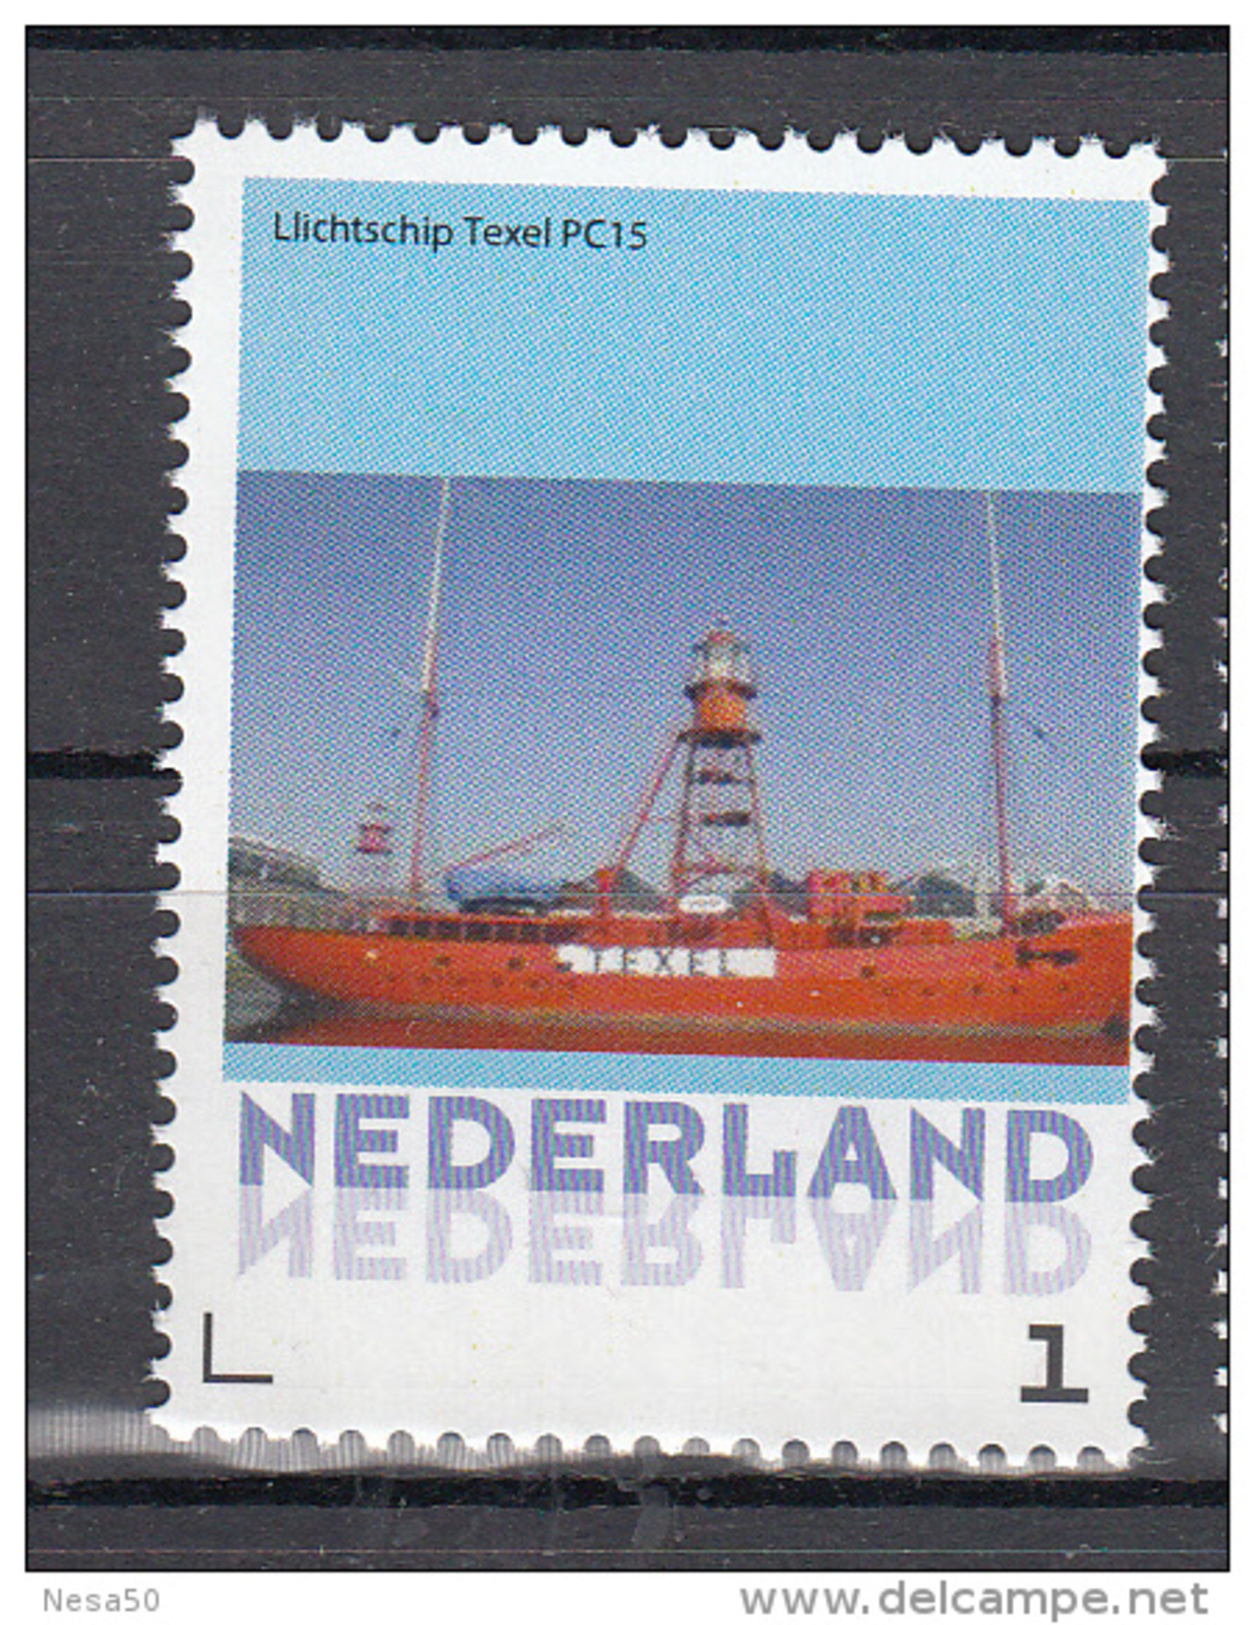 Nederland 2015 Persoonlijke Zegel: Lighthouse, Vuurtoren: Lichtschip Texel , Lightschip - Faros